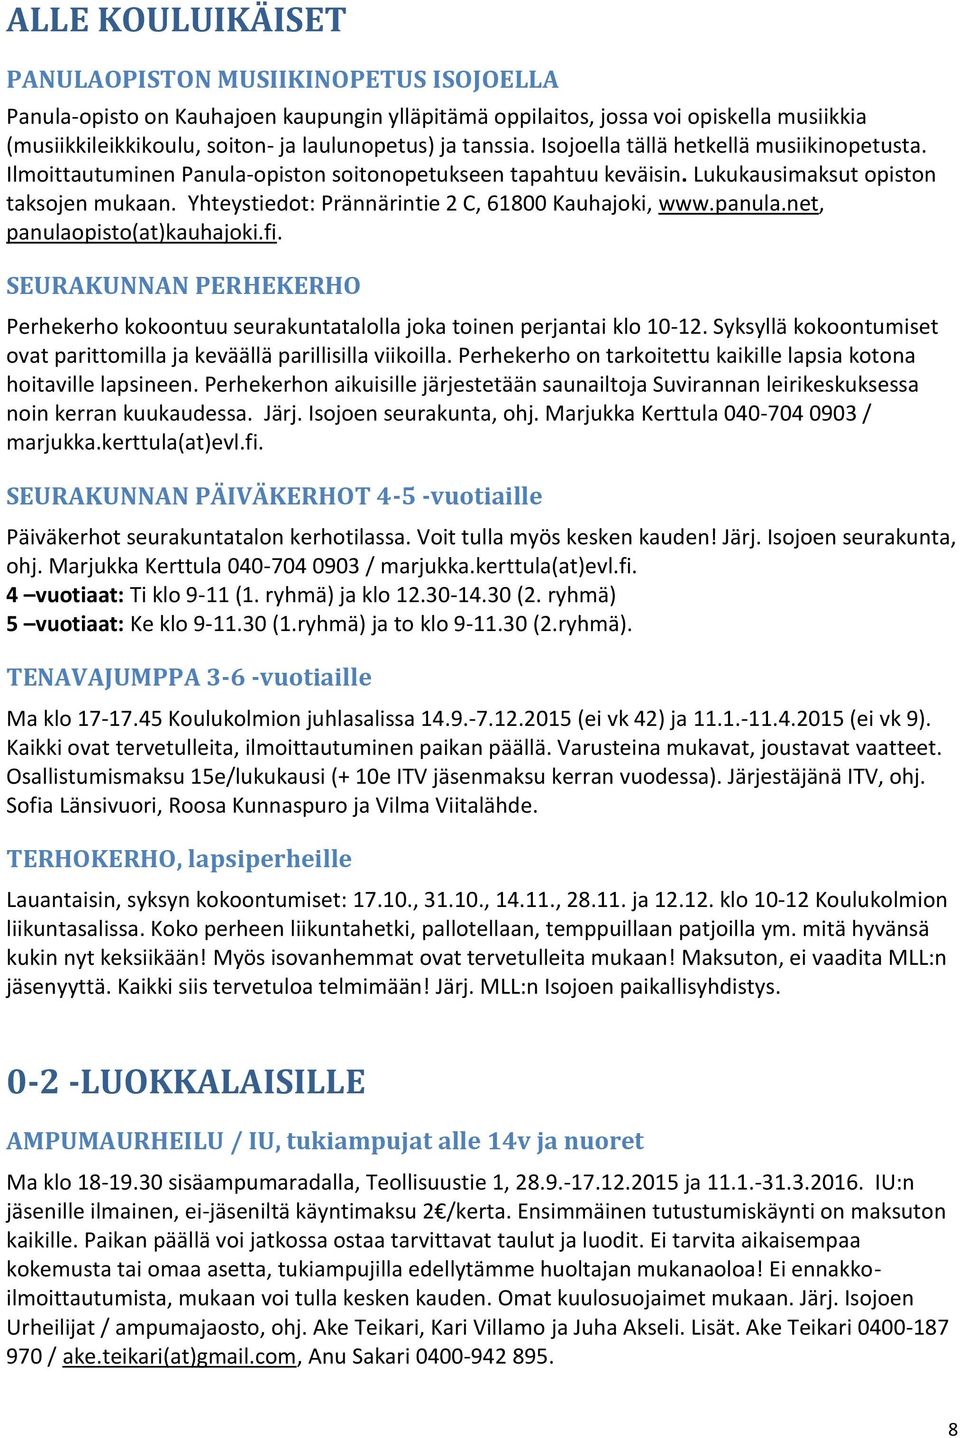 Yhteystiedot: Prännärintie 2 C, 61800 Kauhajoki, www.panula.net, panulaopisto(at)kauhajoki.fi. SEURAKUNNAN PERHEKERHO Perhekerho kokoontuu seurakuntatalolla joka toinen perjantai klo 10-12.